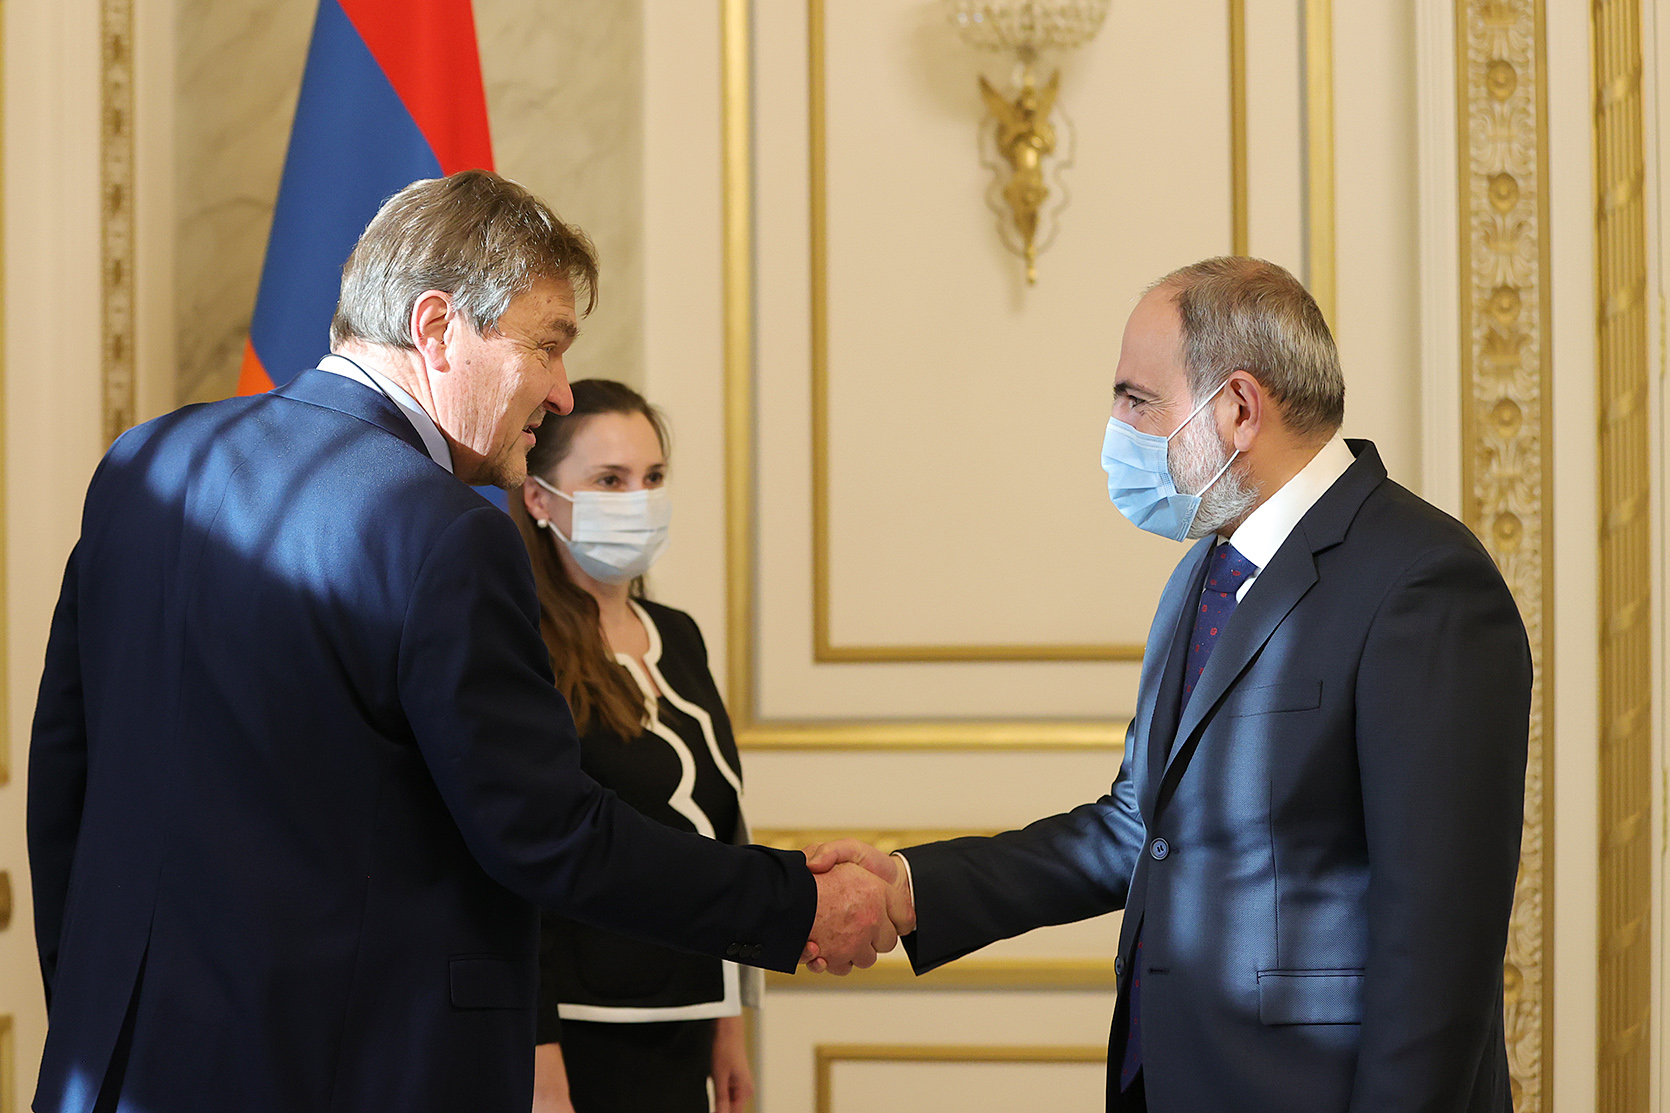 Армения - сияющая звезда демократии в регионе: содокладчик ПАСЕ премьер-министру Пашиняну